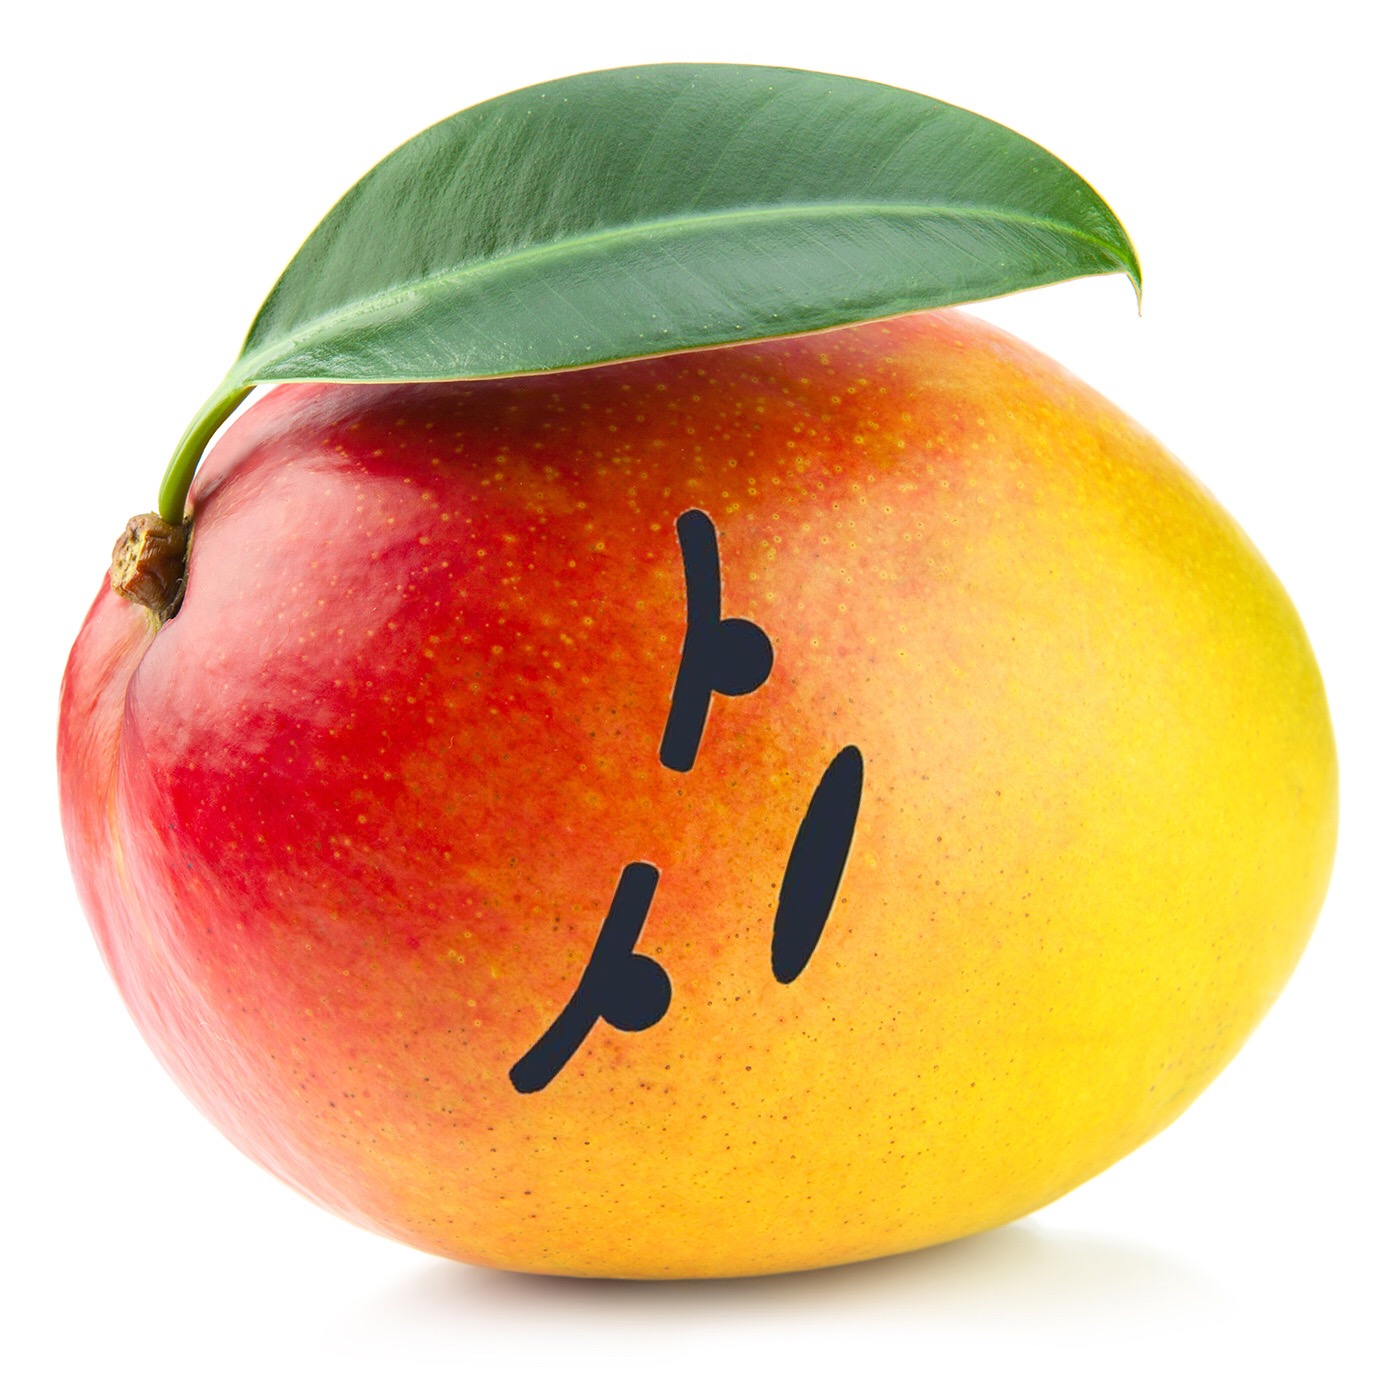 Angery mango.